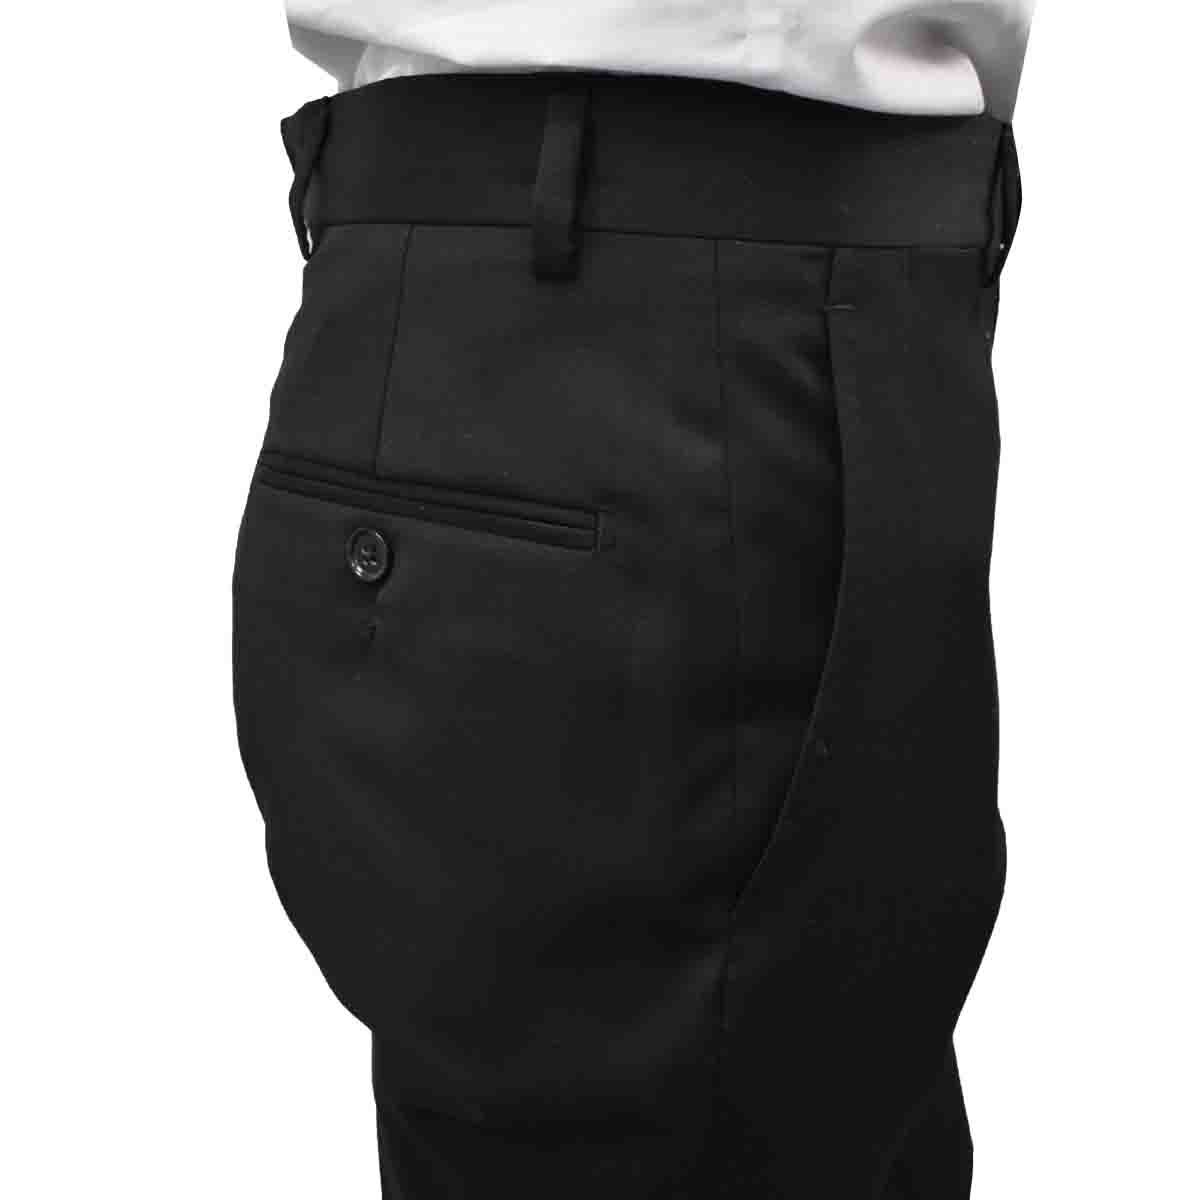 Pantalon Slim Fit Modelo Elo Hy70295Ox Gris Oxford Haggar para Hombre